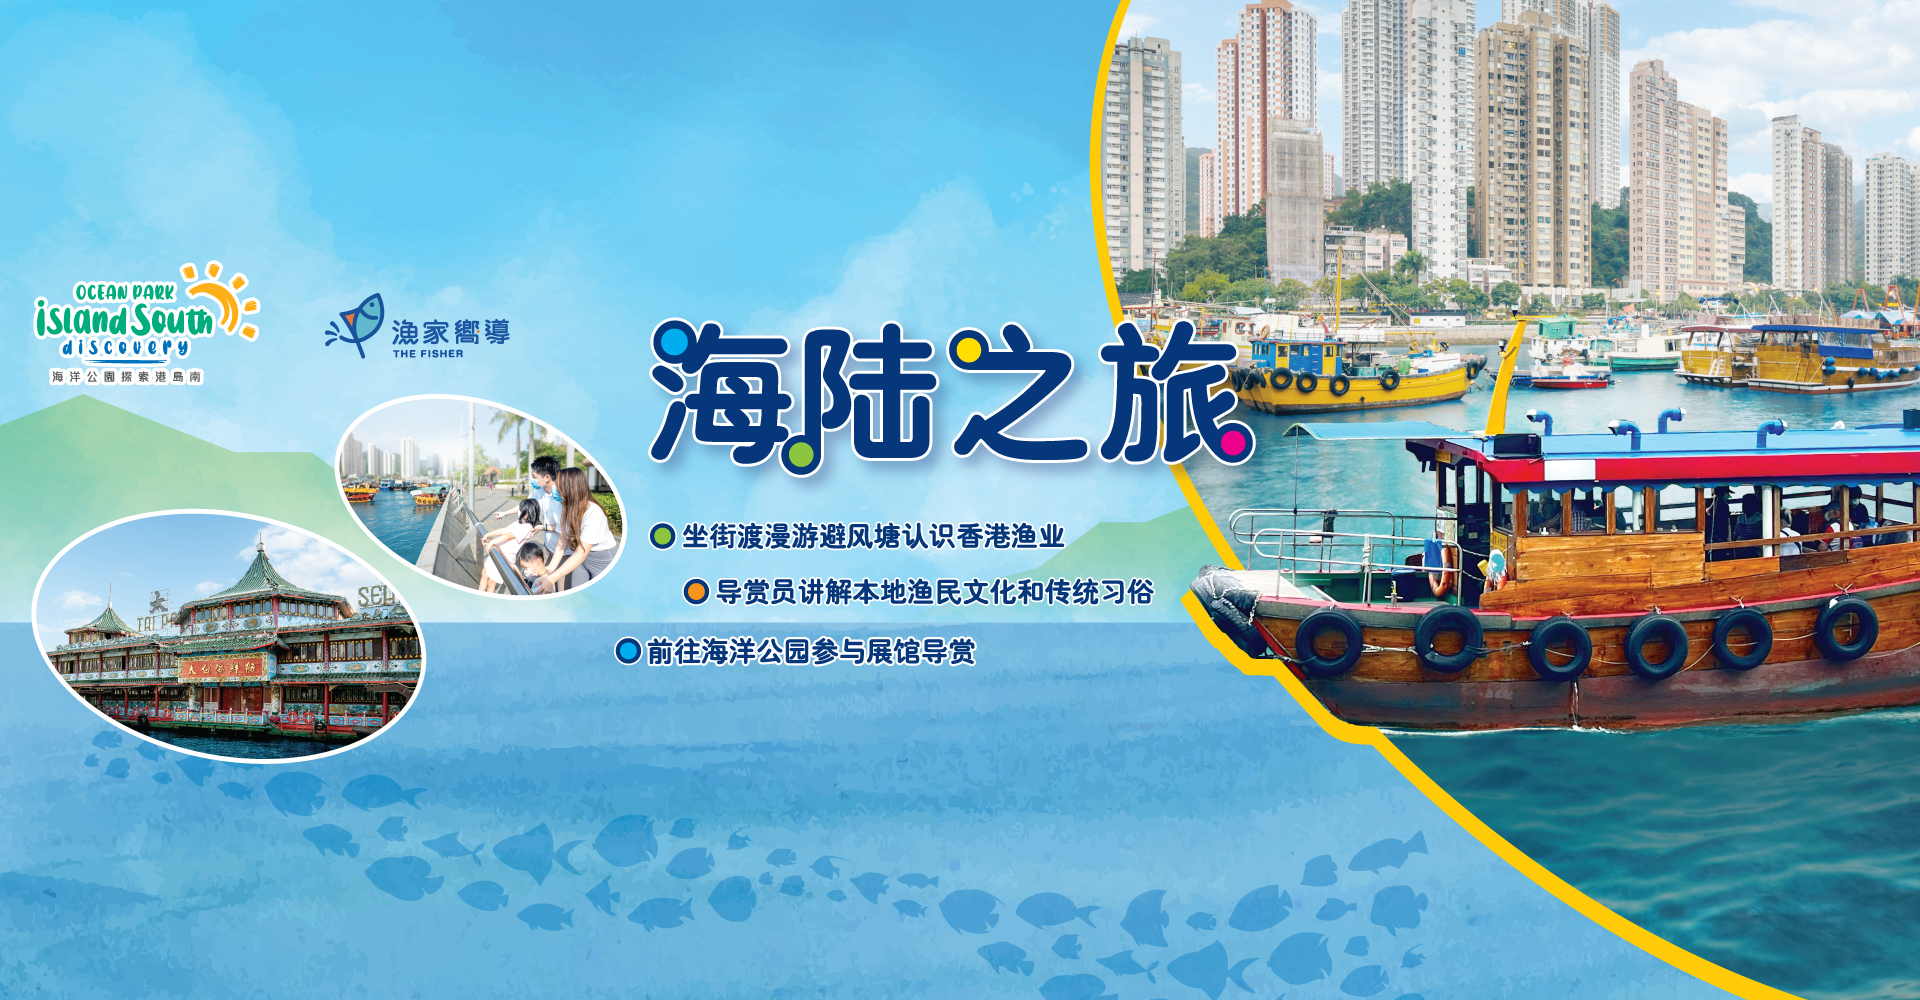 https://media.oceanpark.cn/files/s3fs-public/land-sea-guided-tour-innerpage-banner-desktop-sc.jpg